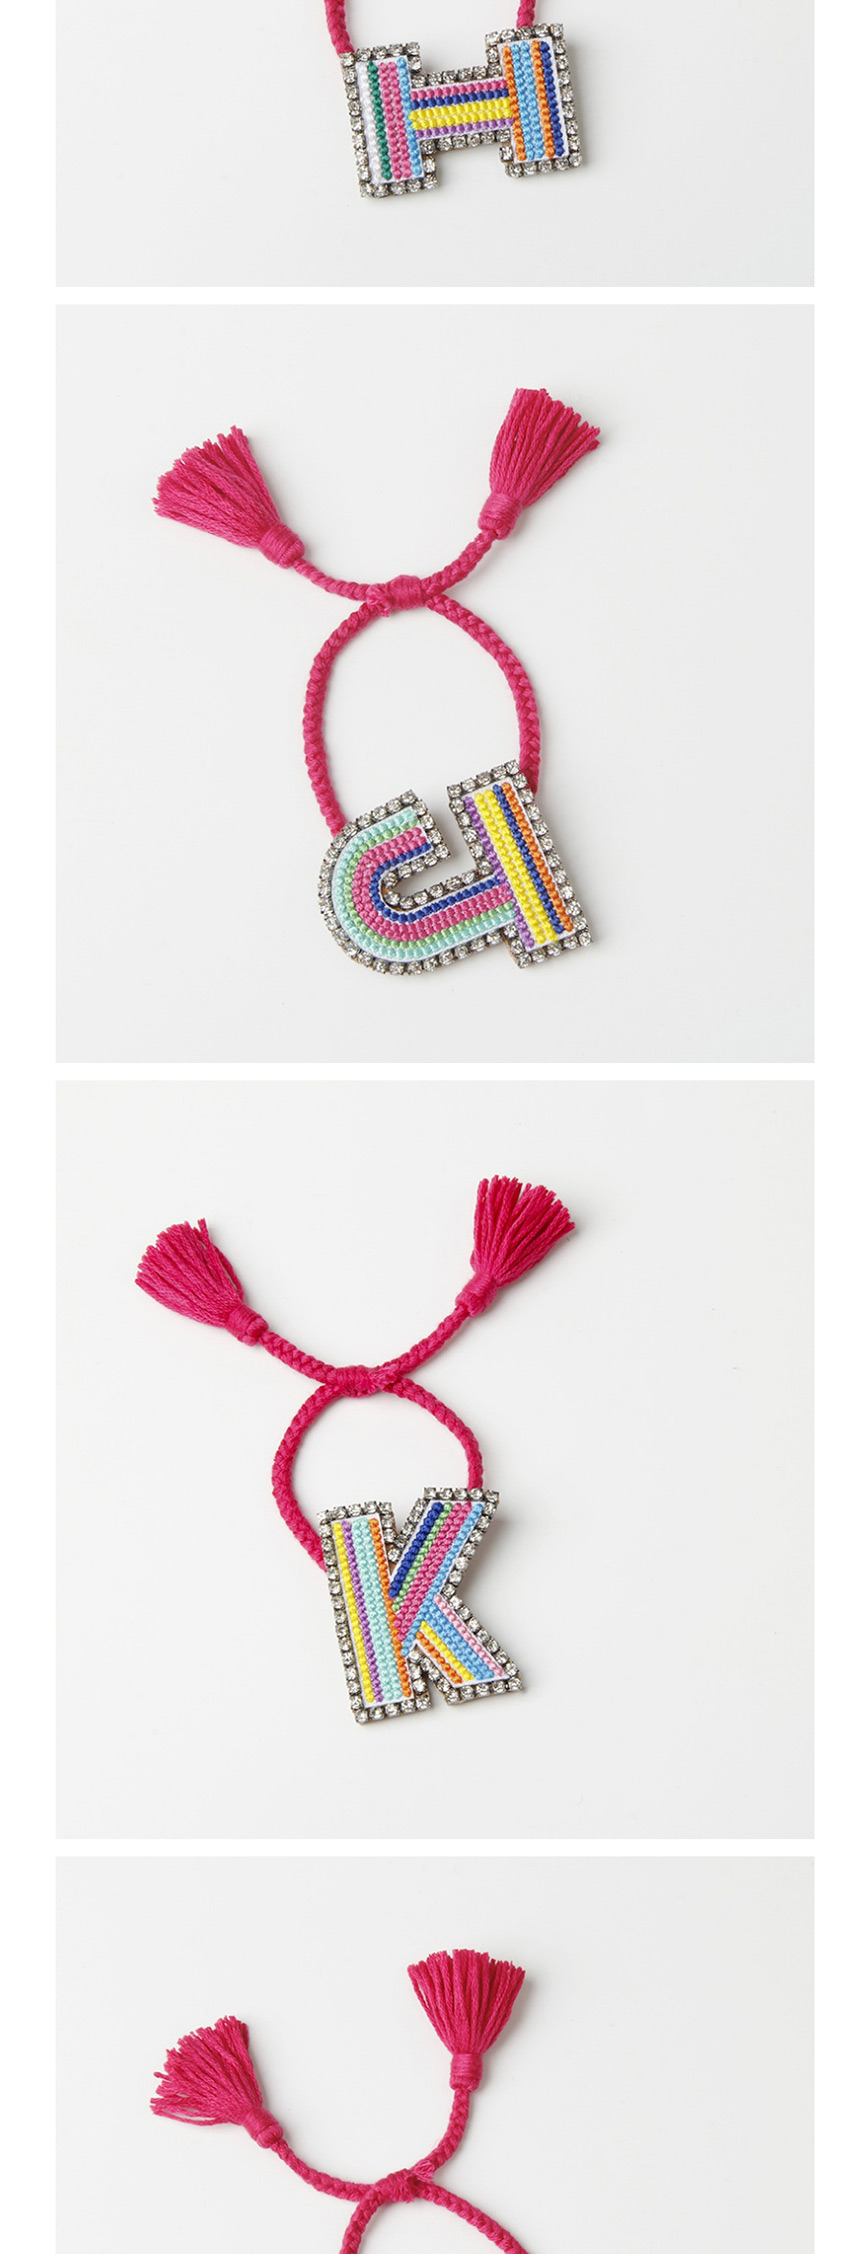 Fashion H Color Embroidered Woven Adjustable Crystal Alphabet Bracelet,Fashion Bracelets